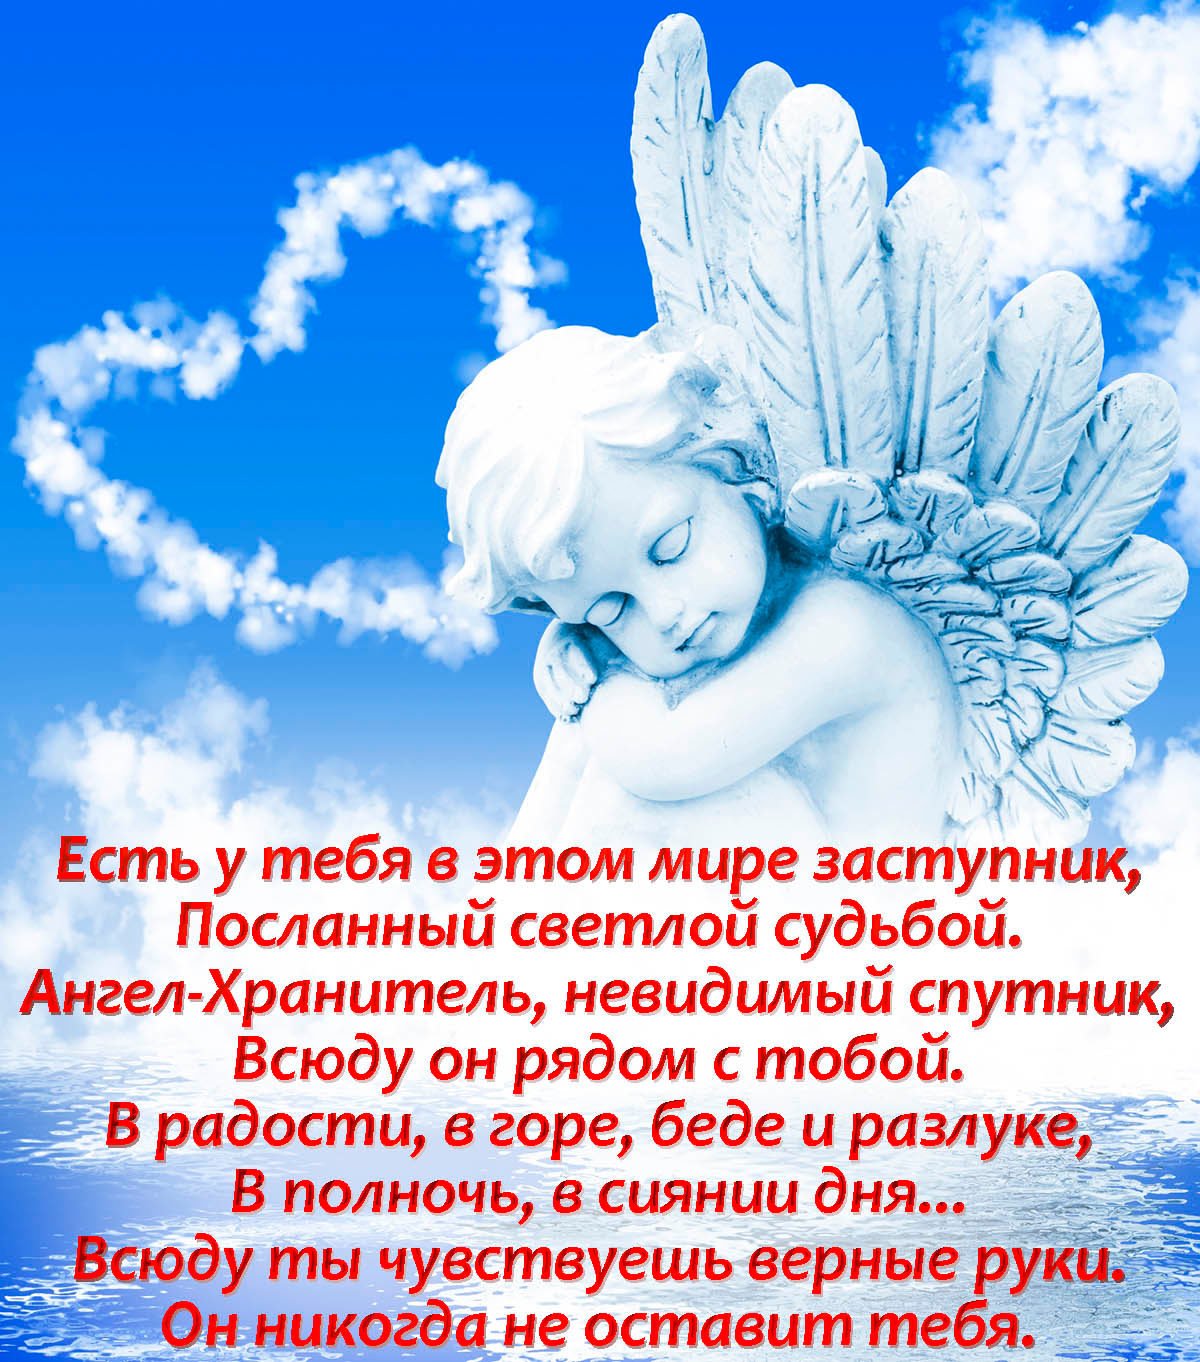 И ангелом всегда храним. Ангел на облаке. Небесные ангелы. Ангел-хранитель. Открытки с ангелом хранителем.